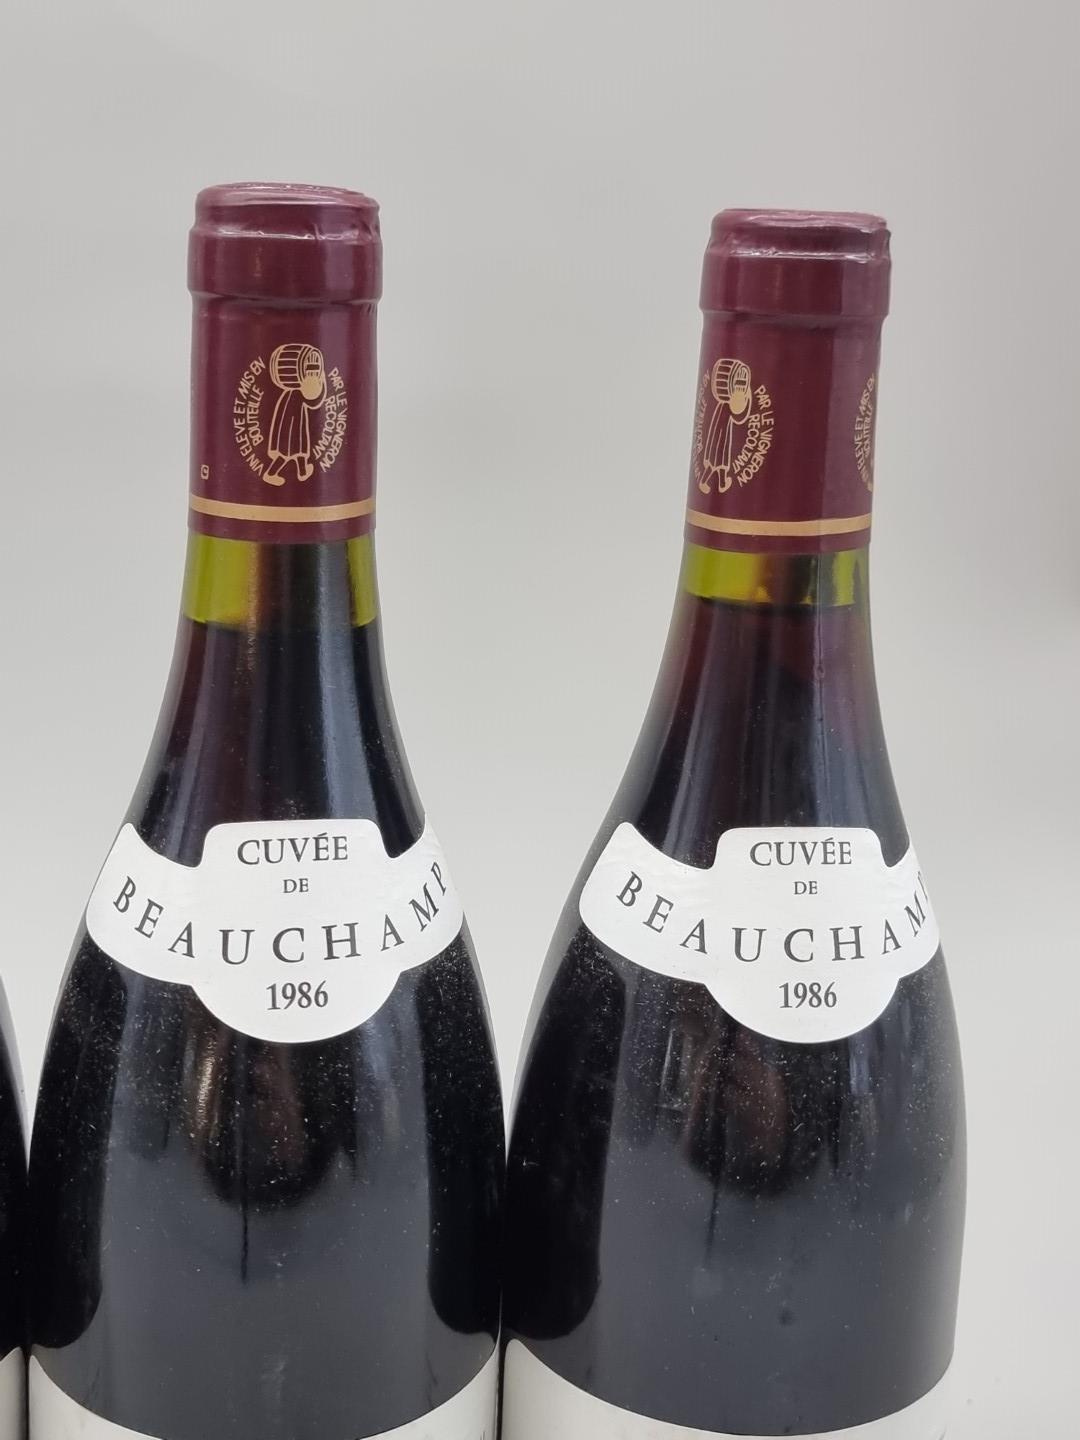 Six 75cl bottles of Gigondas Cuvee Beauchamps, 1986, Chateau de Montmirail. (6) - Image 4 of 4